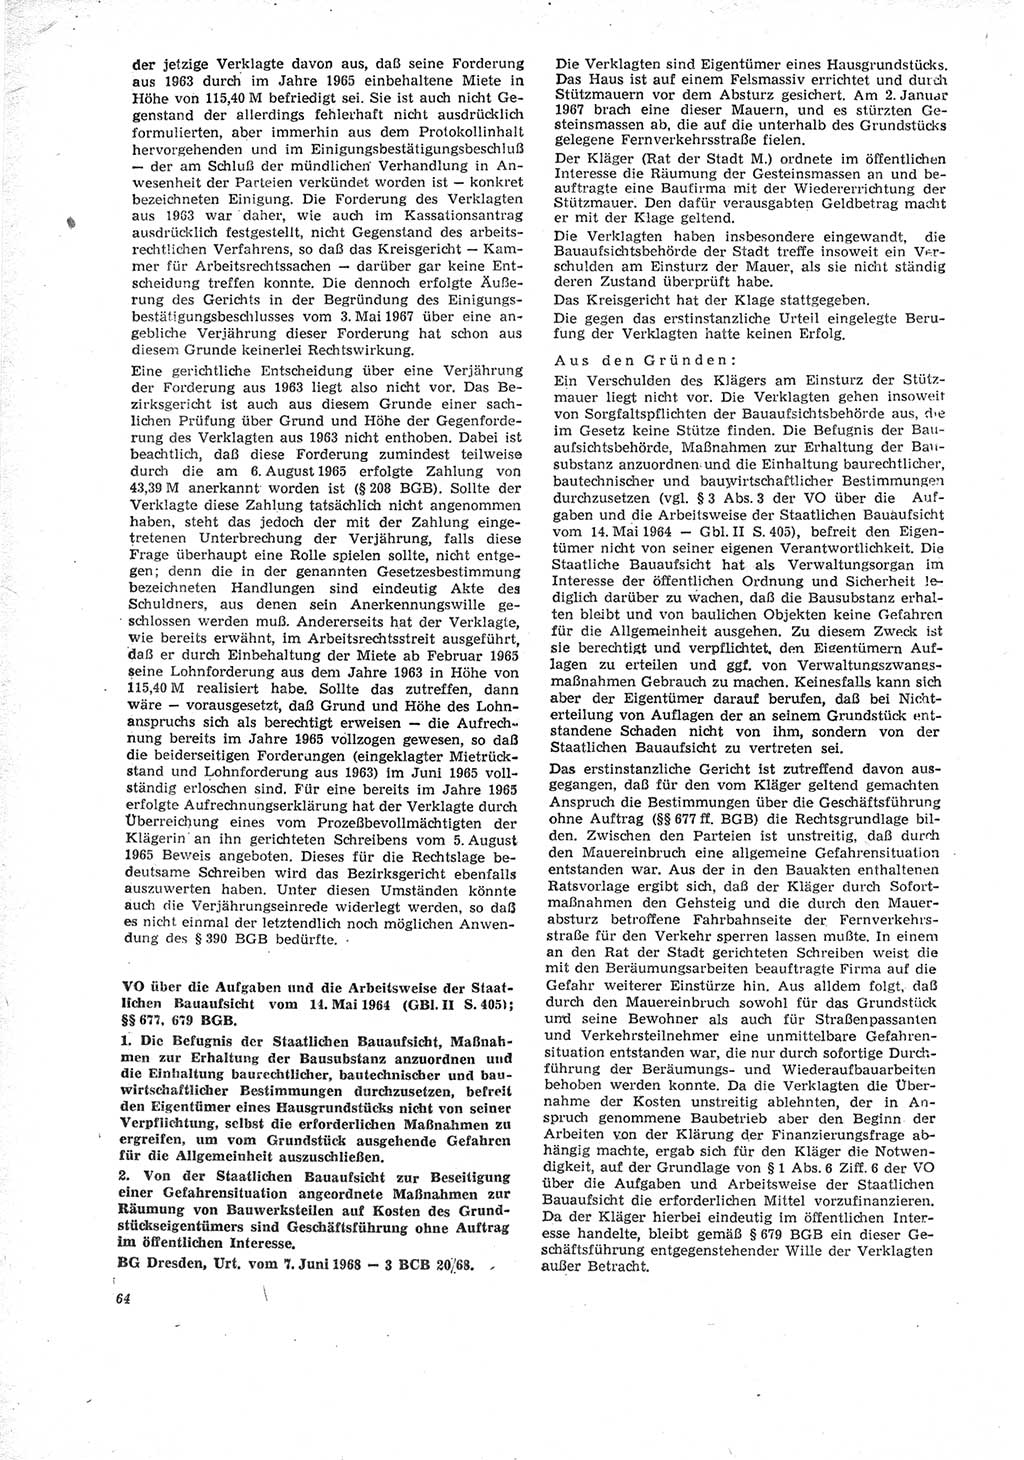 Neue Justiz (NJ), Zeitschrift für Recht und Rechtswissenschaft [Deutsche Demokratische Republik (DDR)], 23. Jahrgang 1969, Seite 64 (NJ DDR 1969, S. 64)